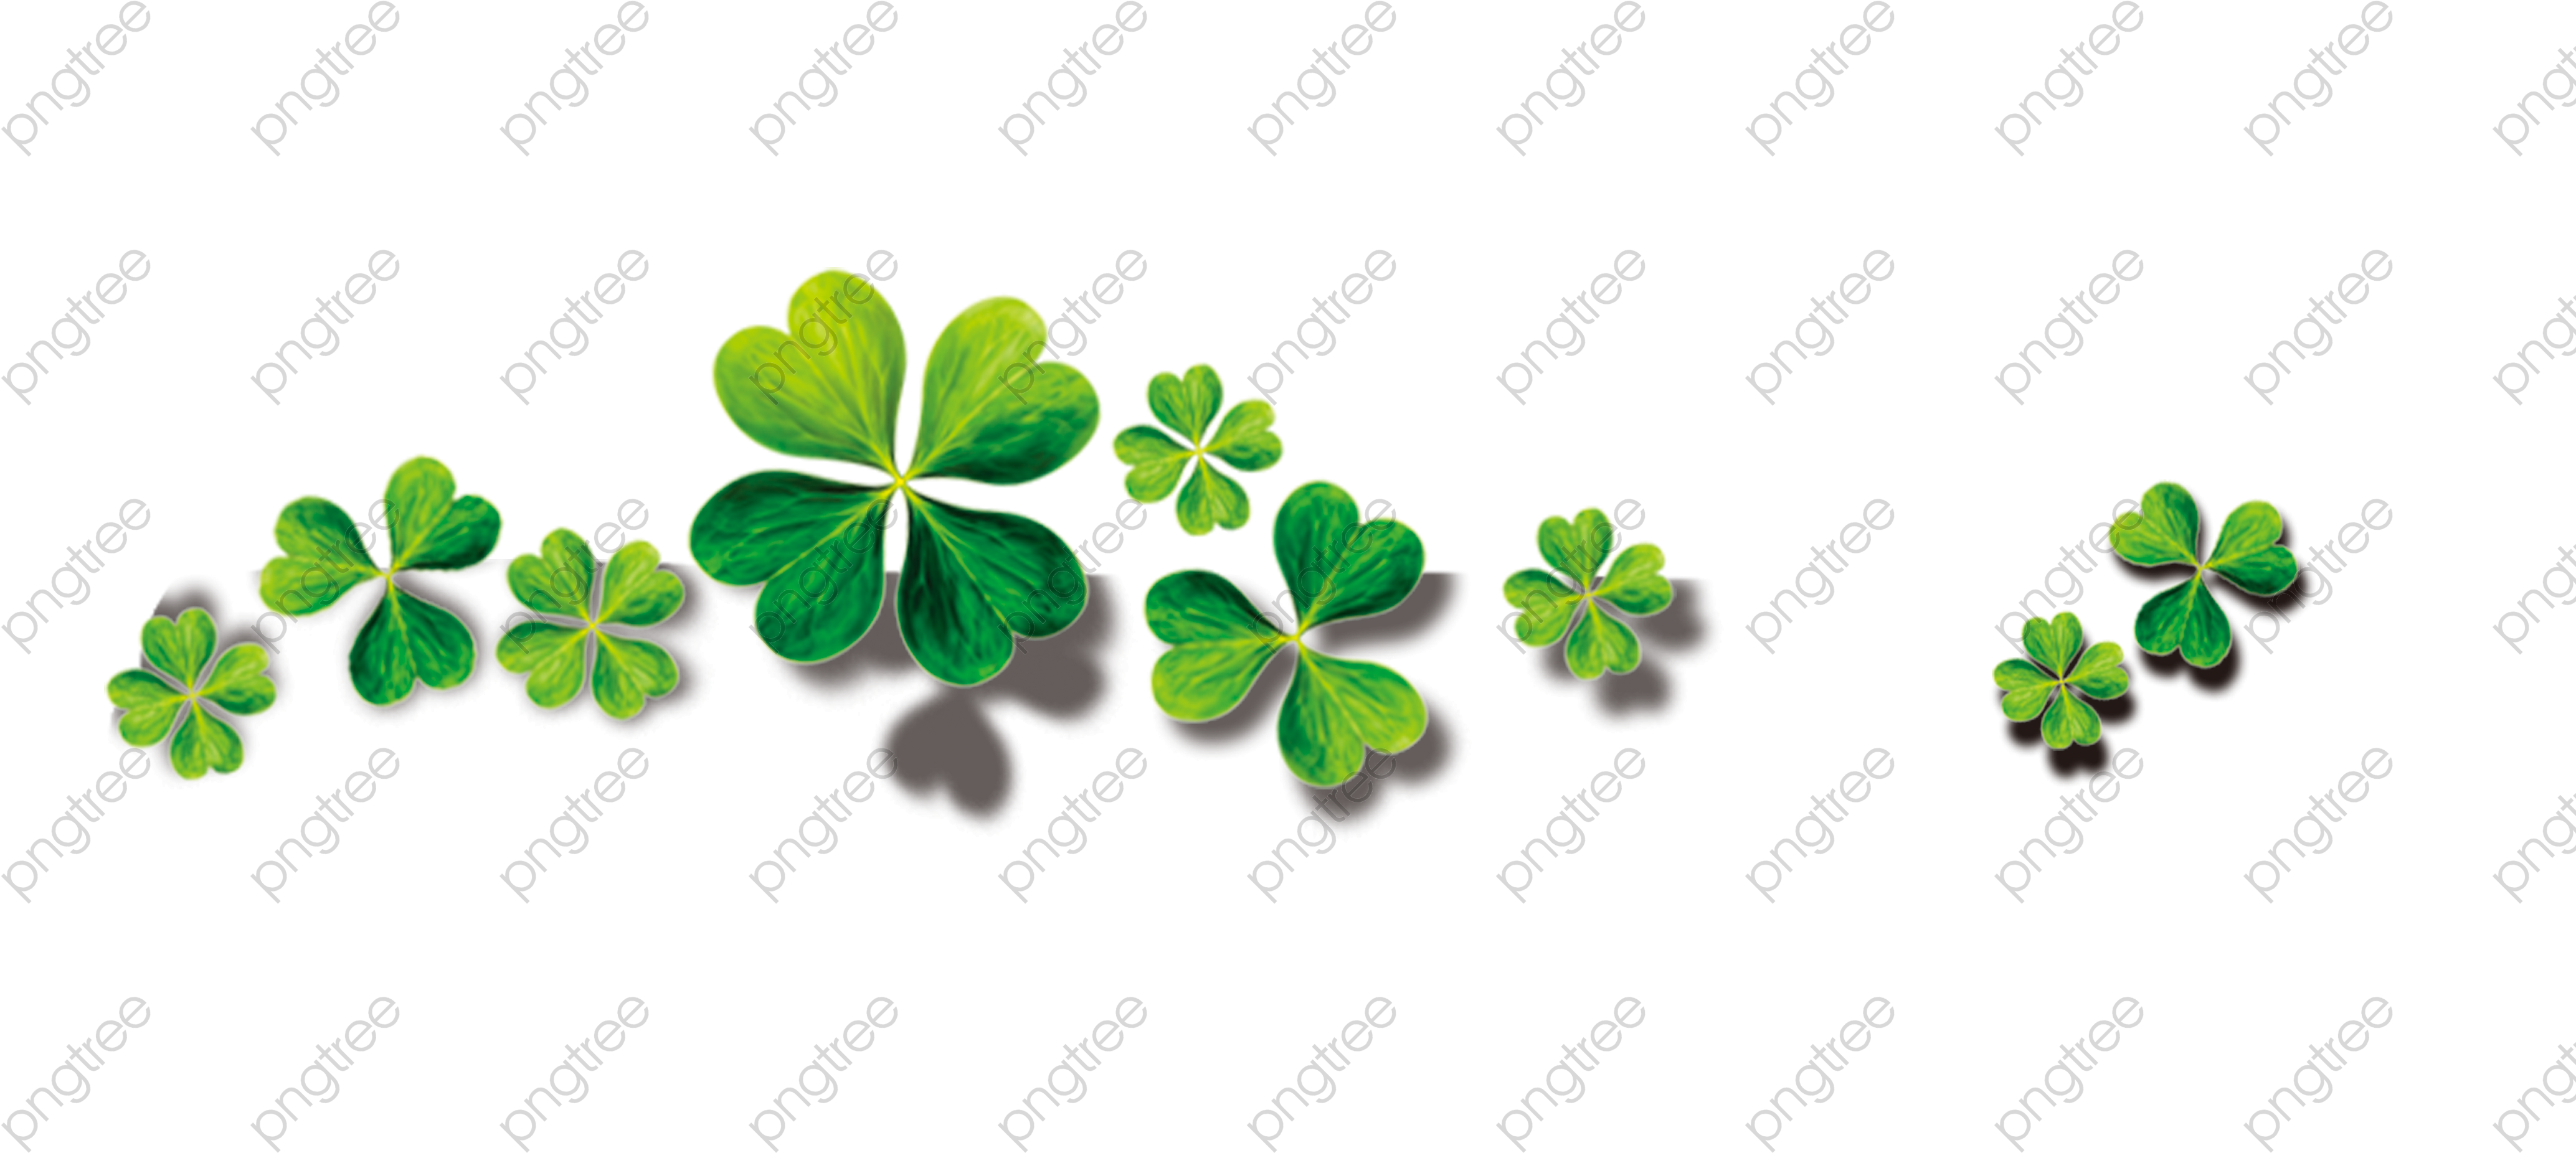 Unique Transparent Four Leaf Clover Png Format Image